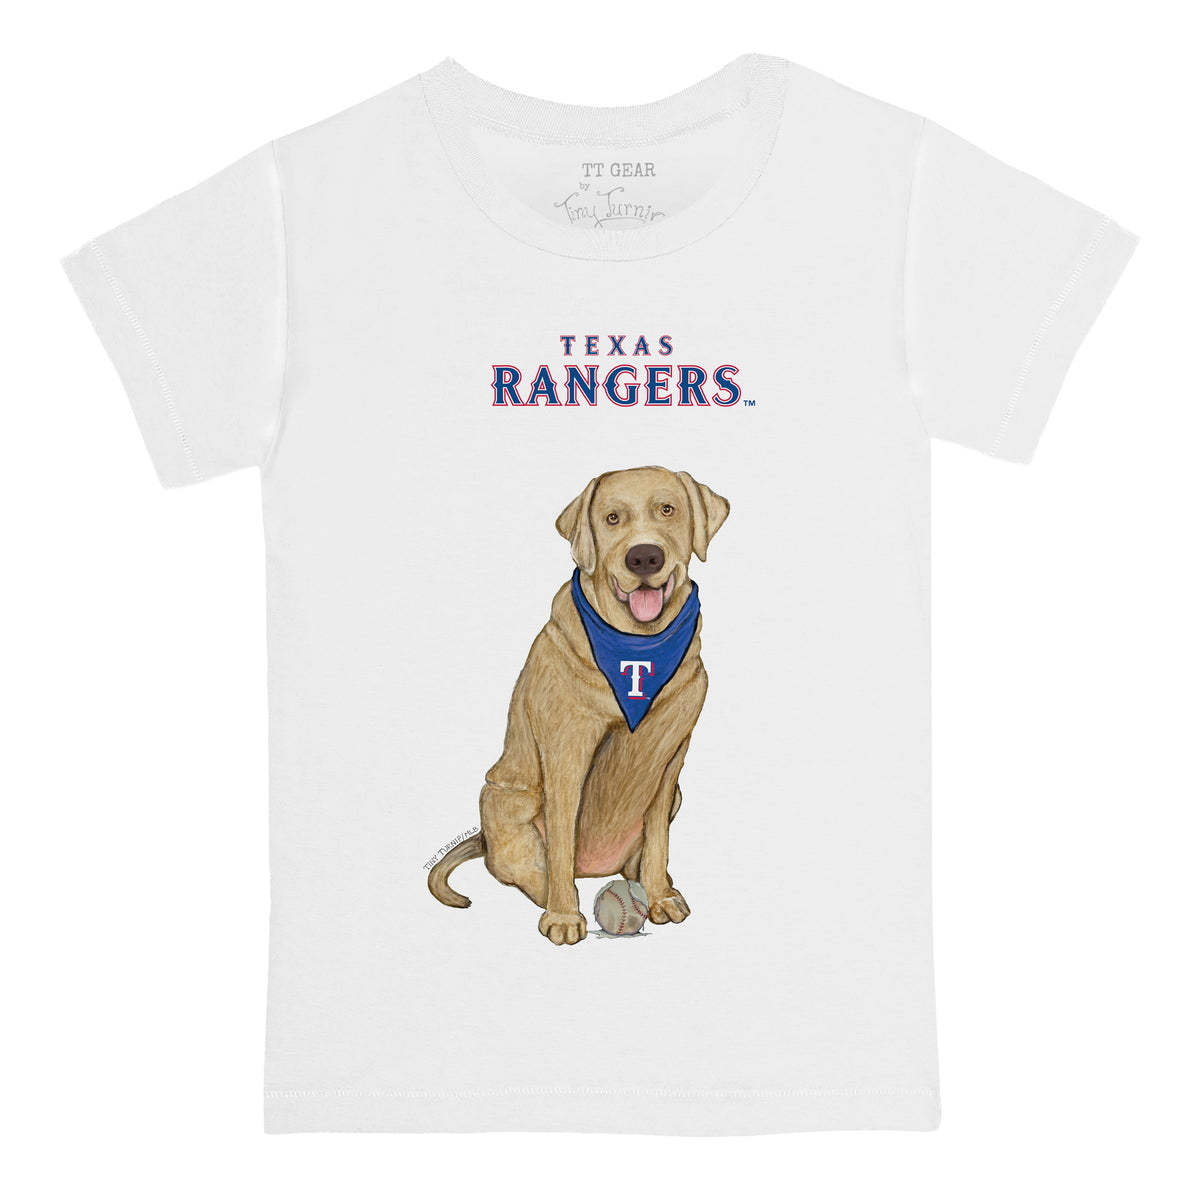 Texas Rangers Yellow Labrador Retriever Tee Shirt